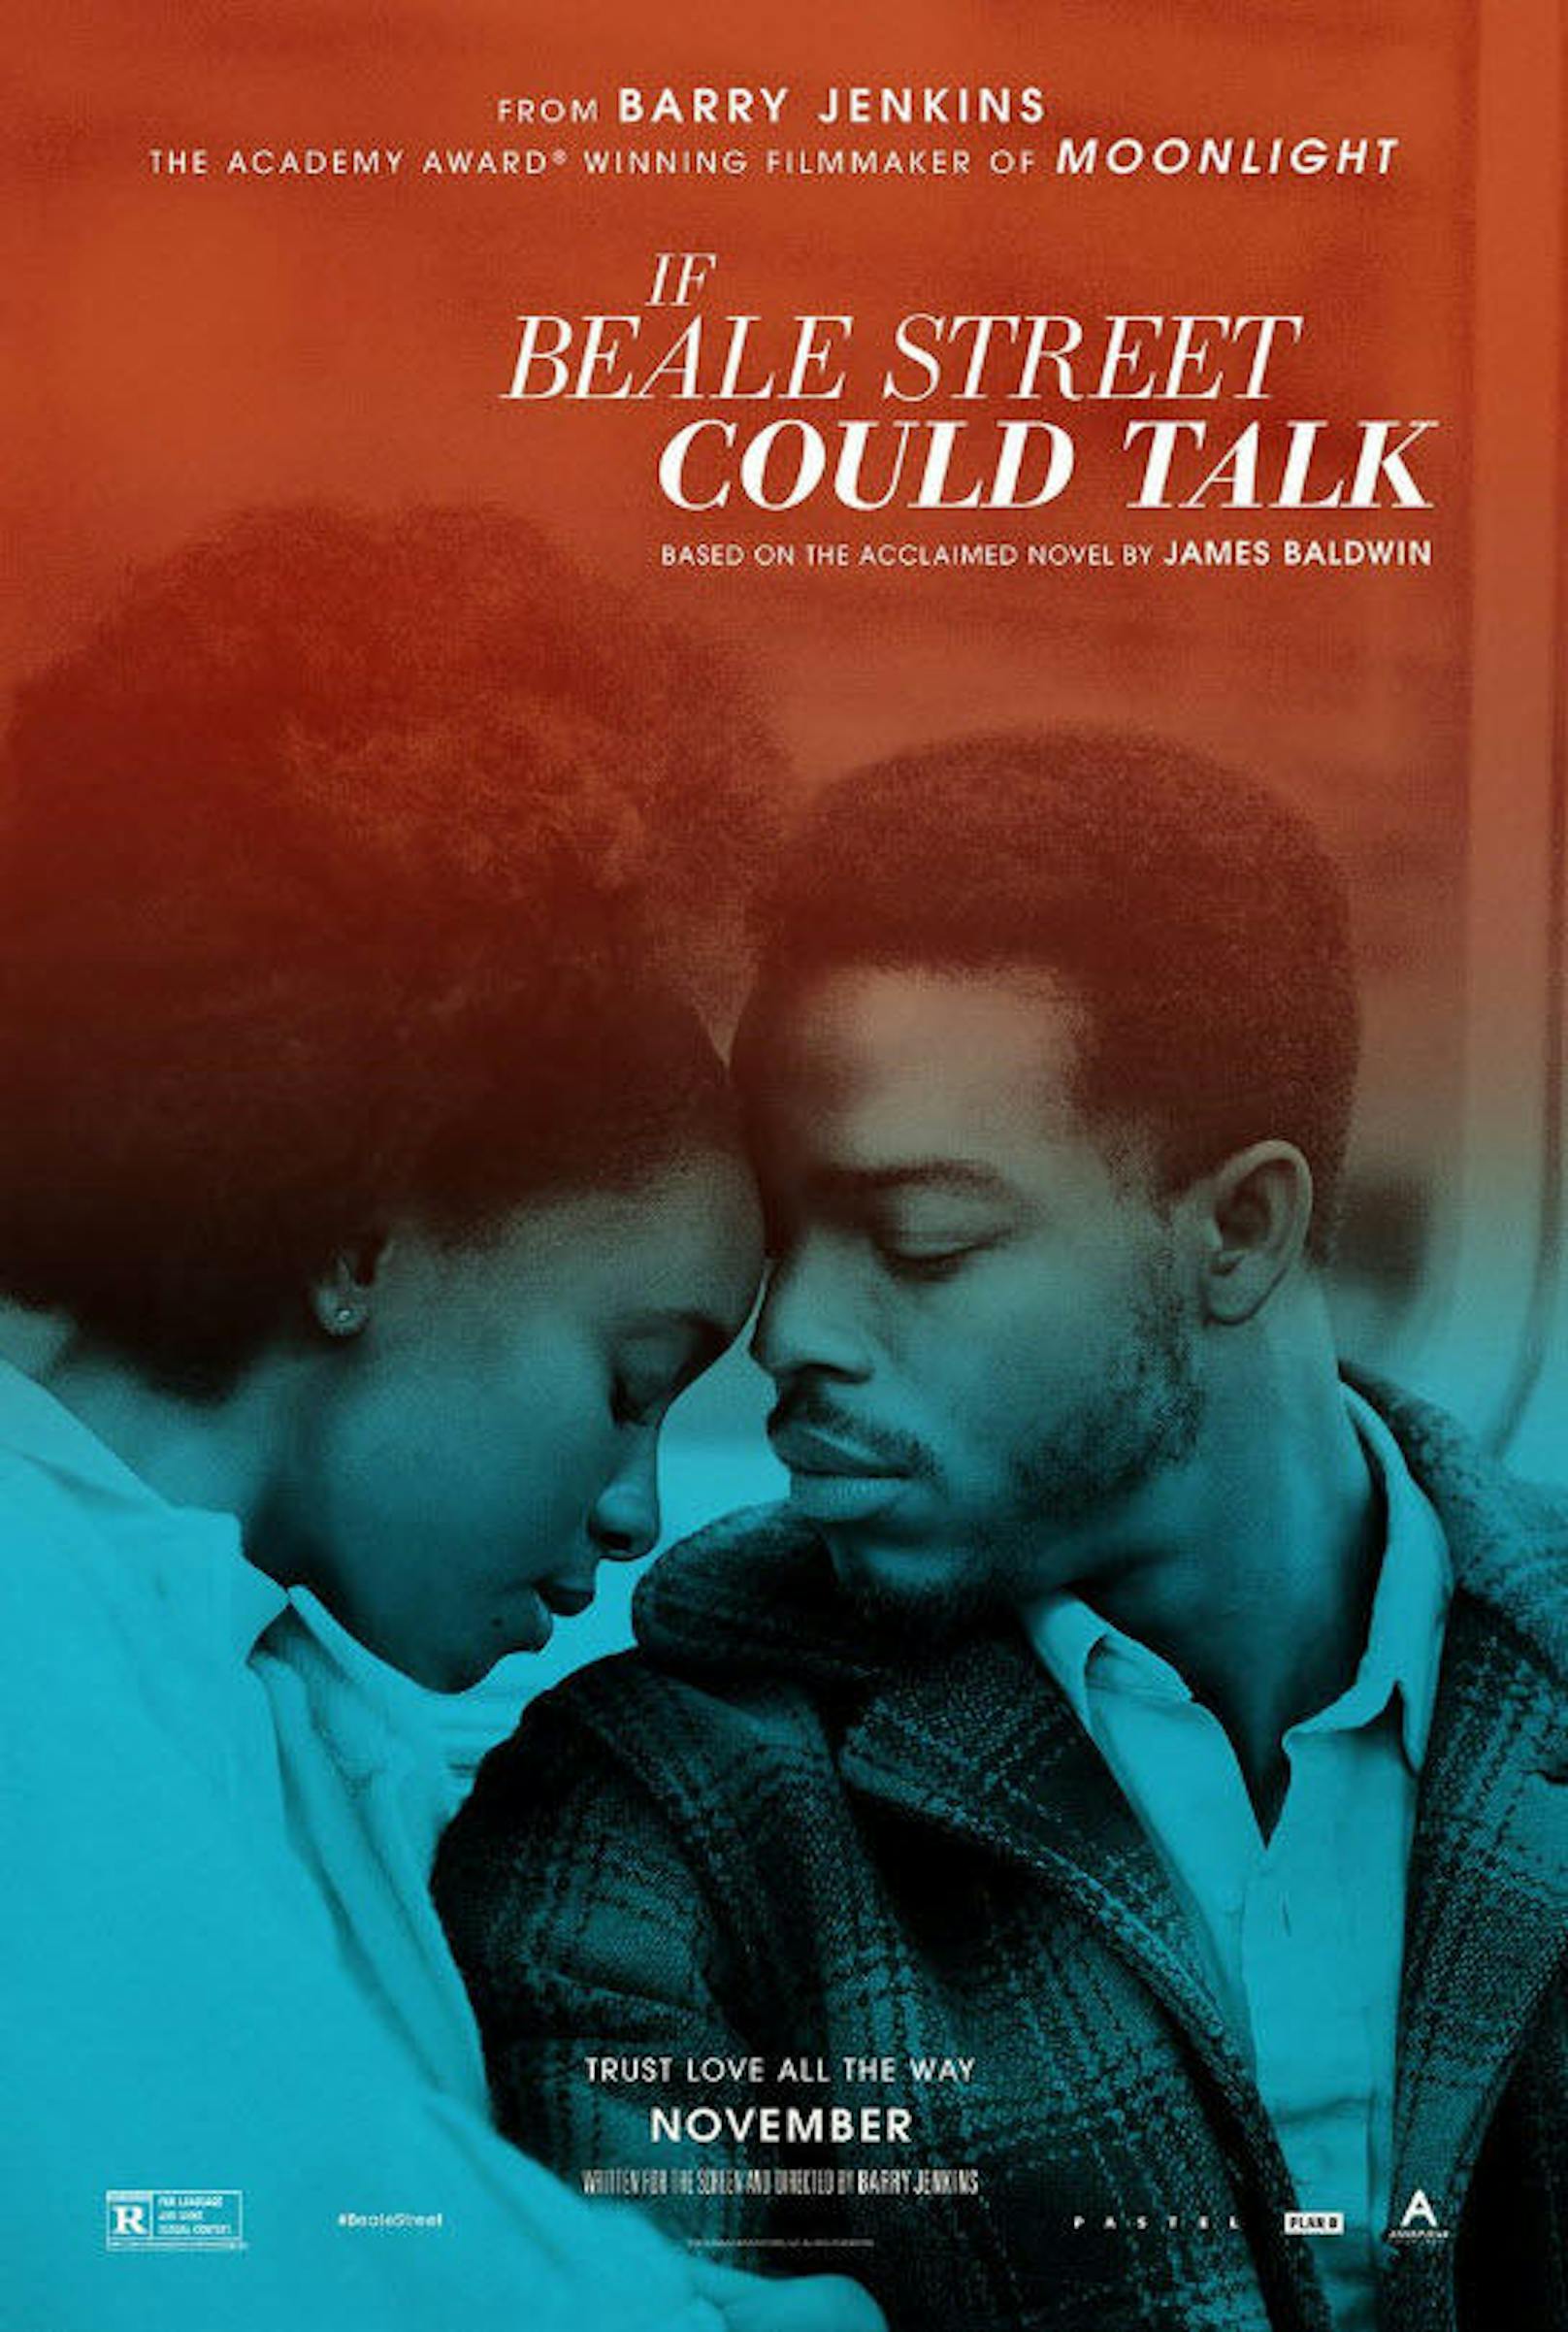 IF BEALE STREET COULD TALK: Der neue Film von Oscar-Preisträger Barry Jenkins ("Moonlight"). Eine schwangere Frau aus Harlem setzt alles daran, die Unschuld ihres Verlobten zu beweisen. 

Kinostart: 15. Februar